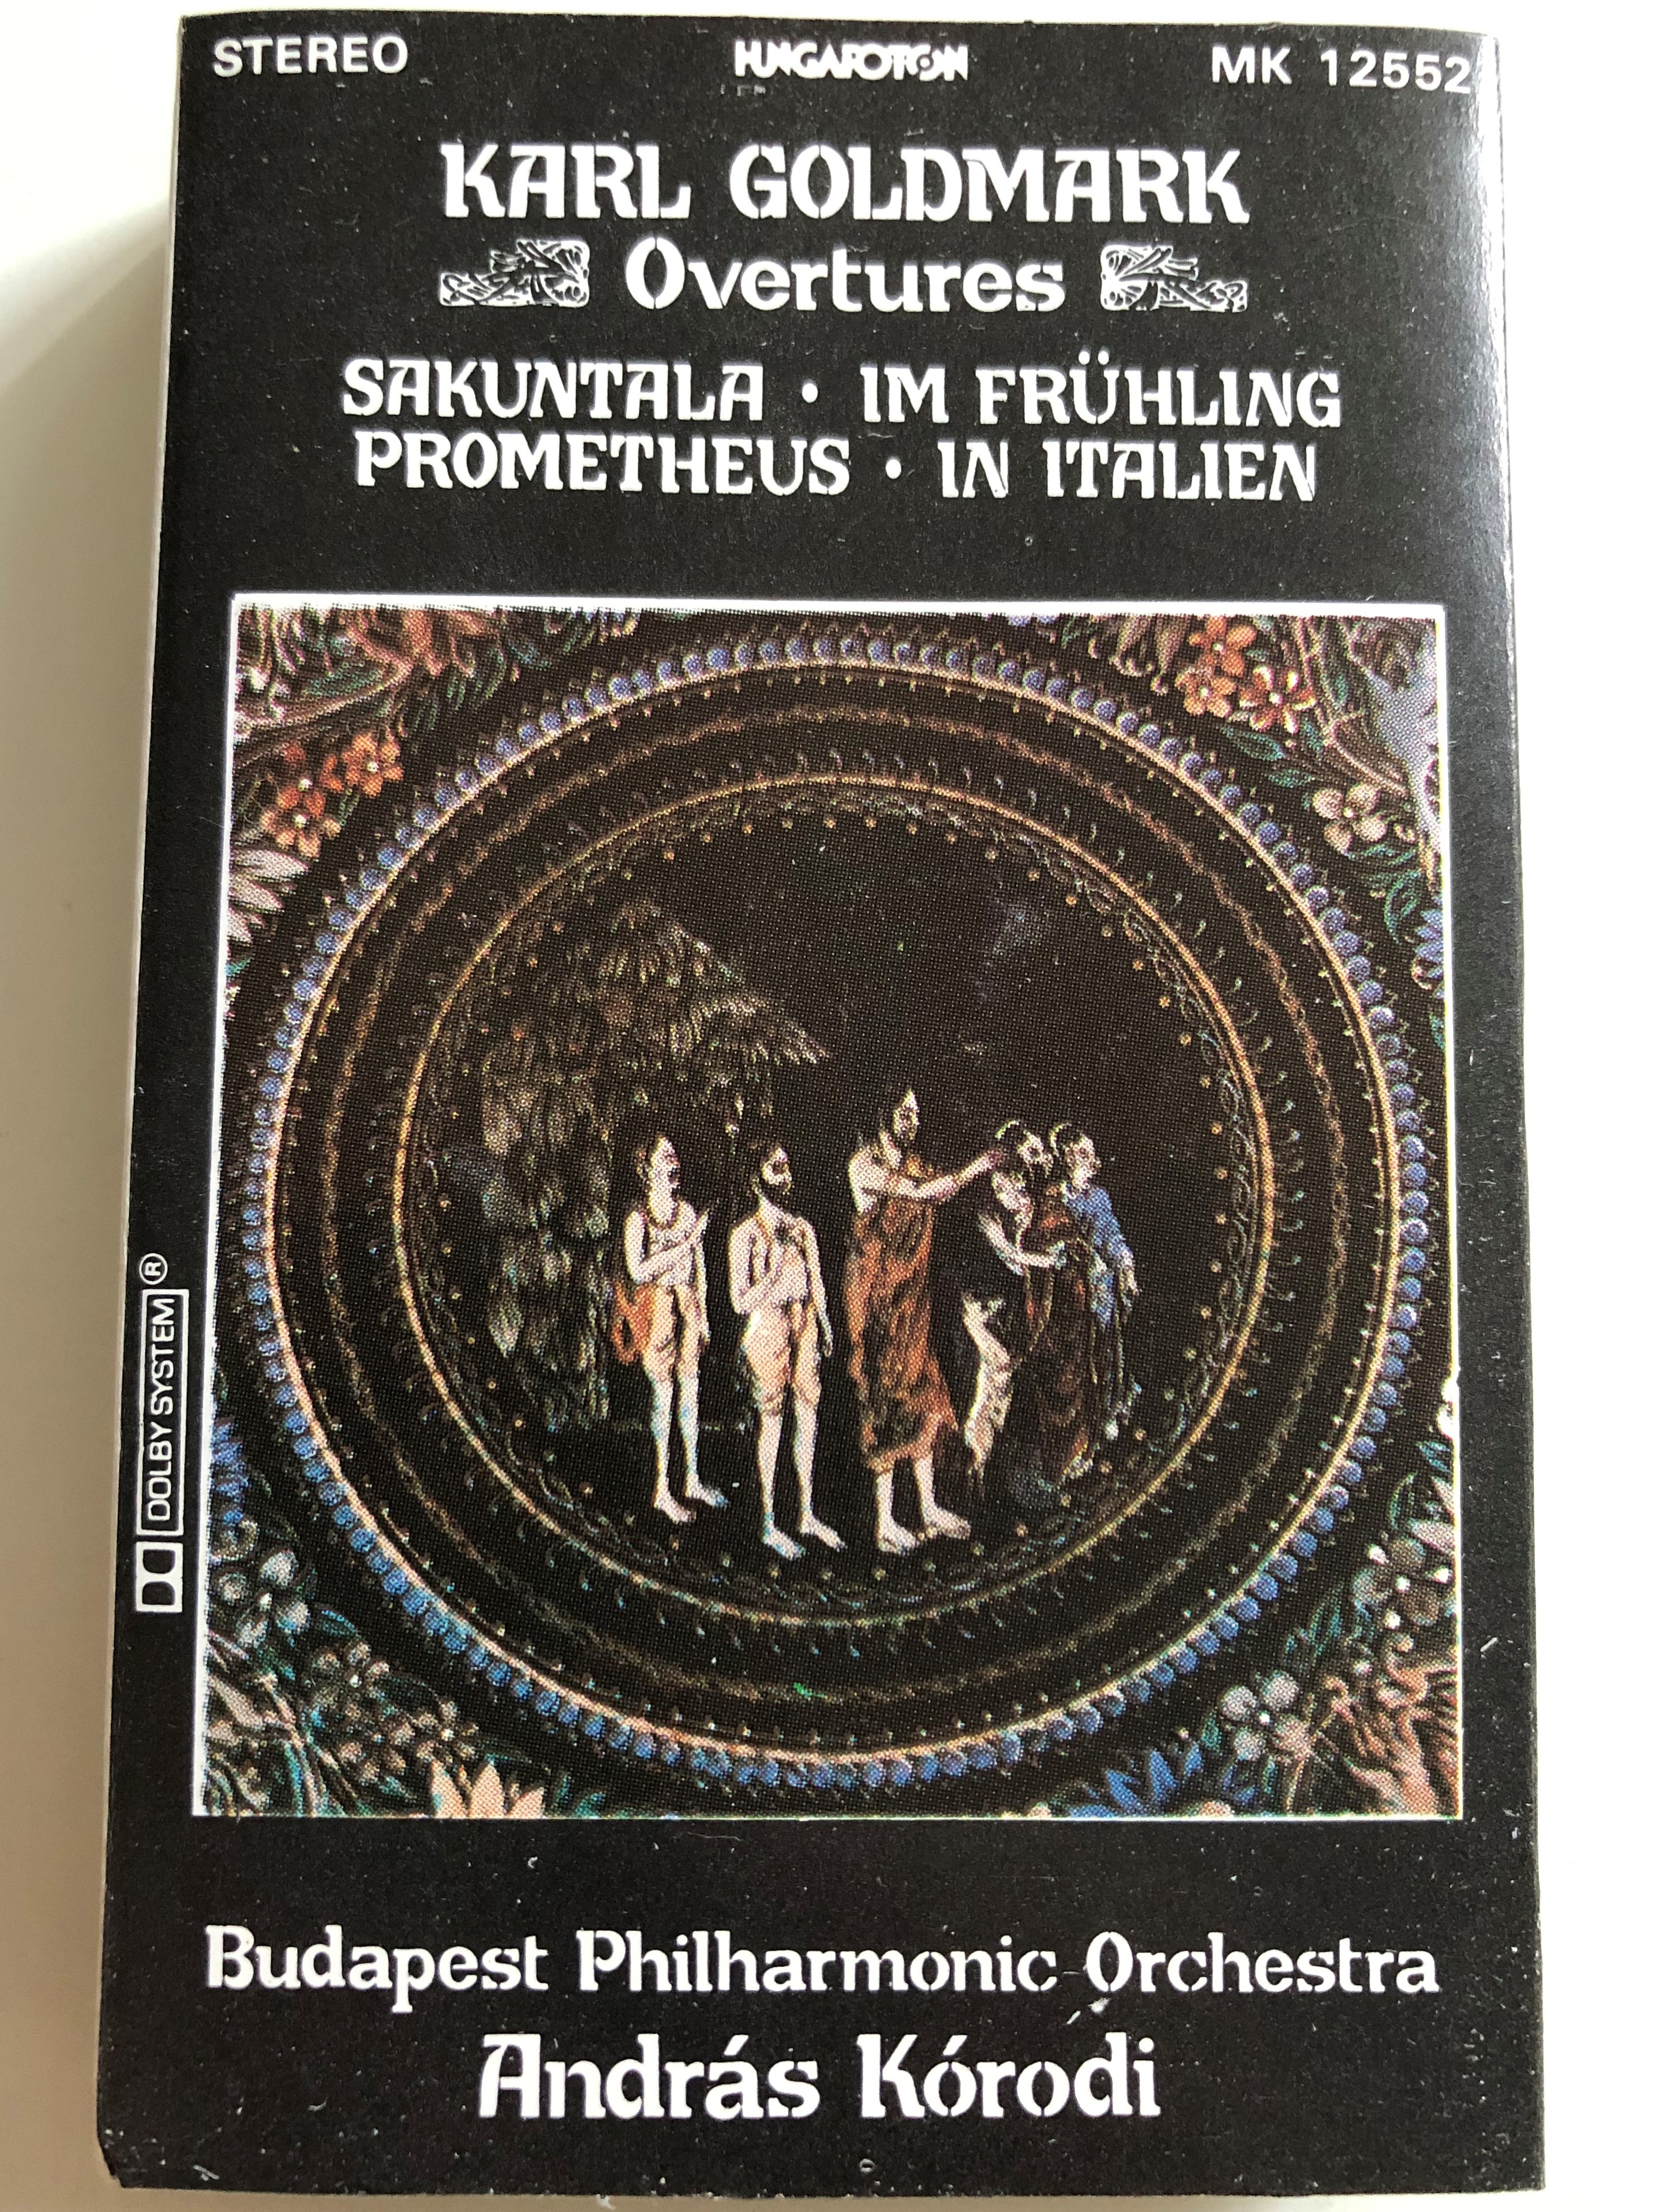 karl-goldmark-overtures-sakuntala-im-fr-hling-prometheus-in-italien-budapest-philharmonic-orchestra-conducted-andr-s-k-rodi-hungaroton-cassette-stereo-mk-12552-1-.jpg